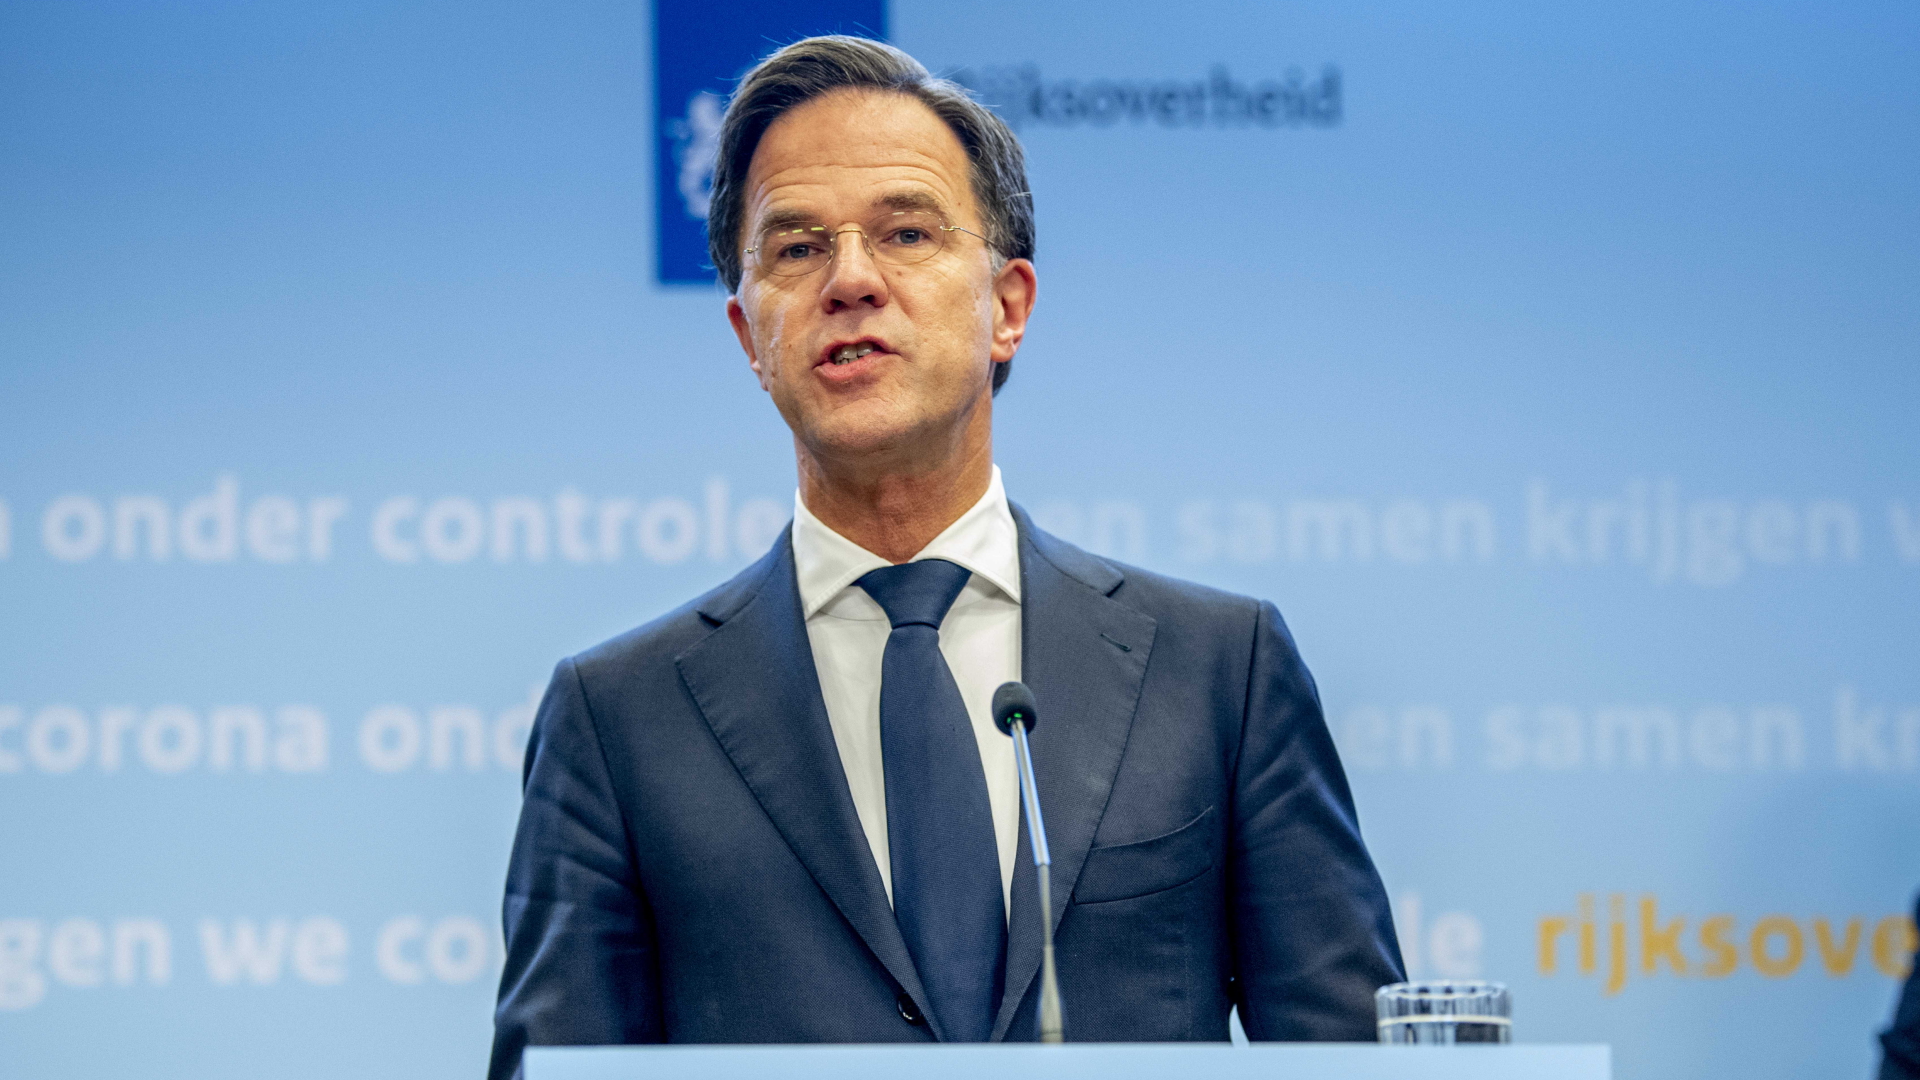 Der niederländische Regierungschef Rutte | dpa